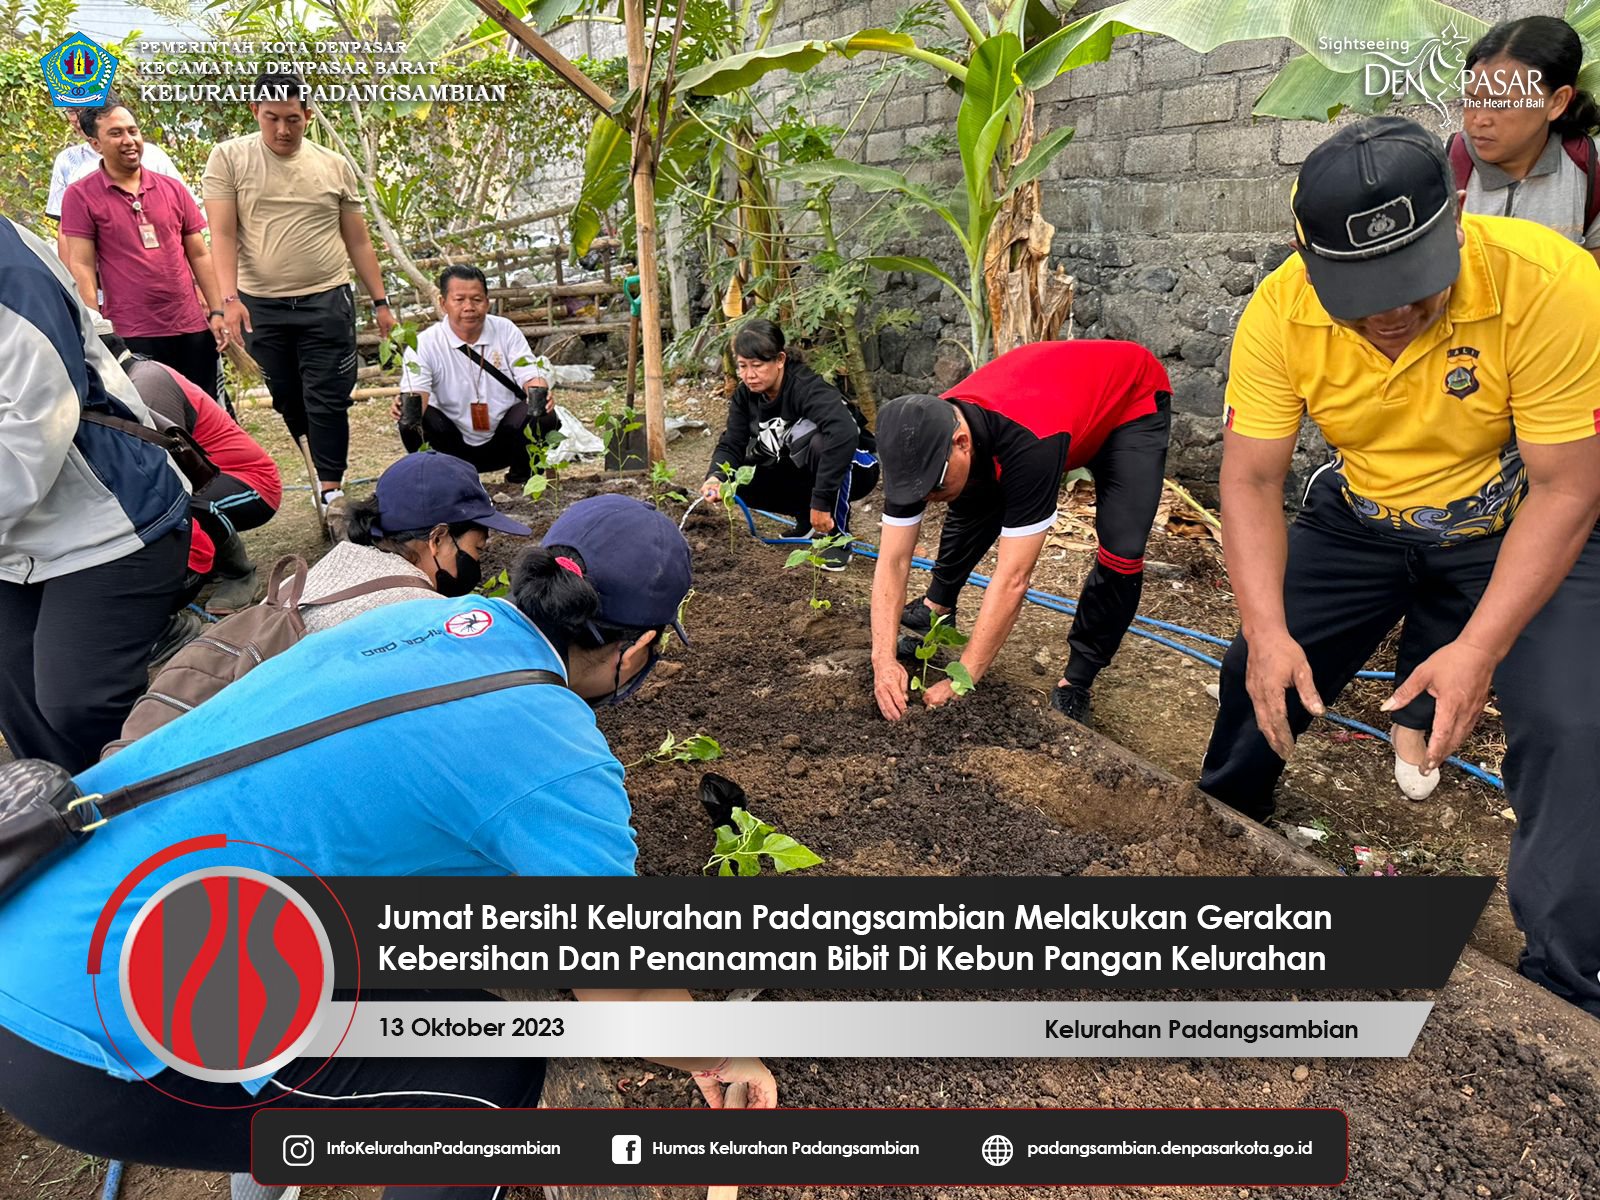 Jumat Bersih! Kelurahan Padangsambian Kembali Mengadakan Gerakan Kebersihan Dan Penanaman Bibit Pada Kebun Ketahanan Pangan Kelurahan